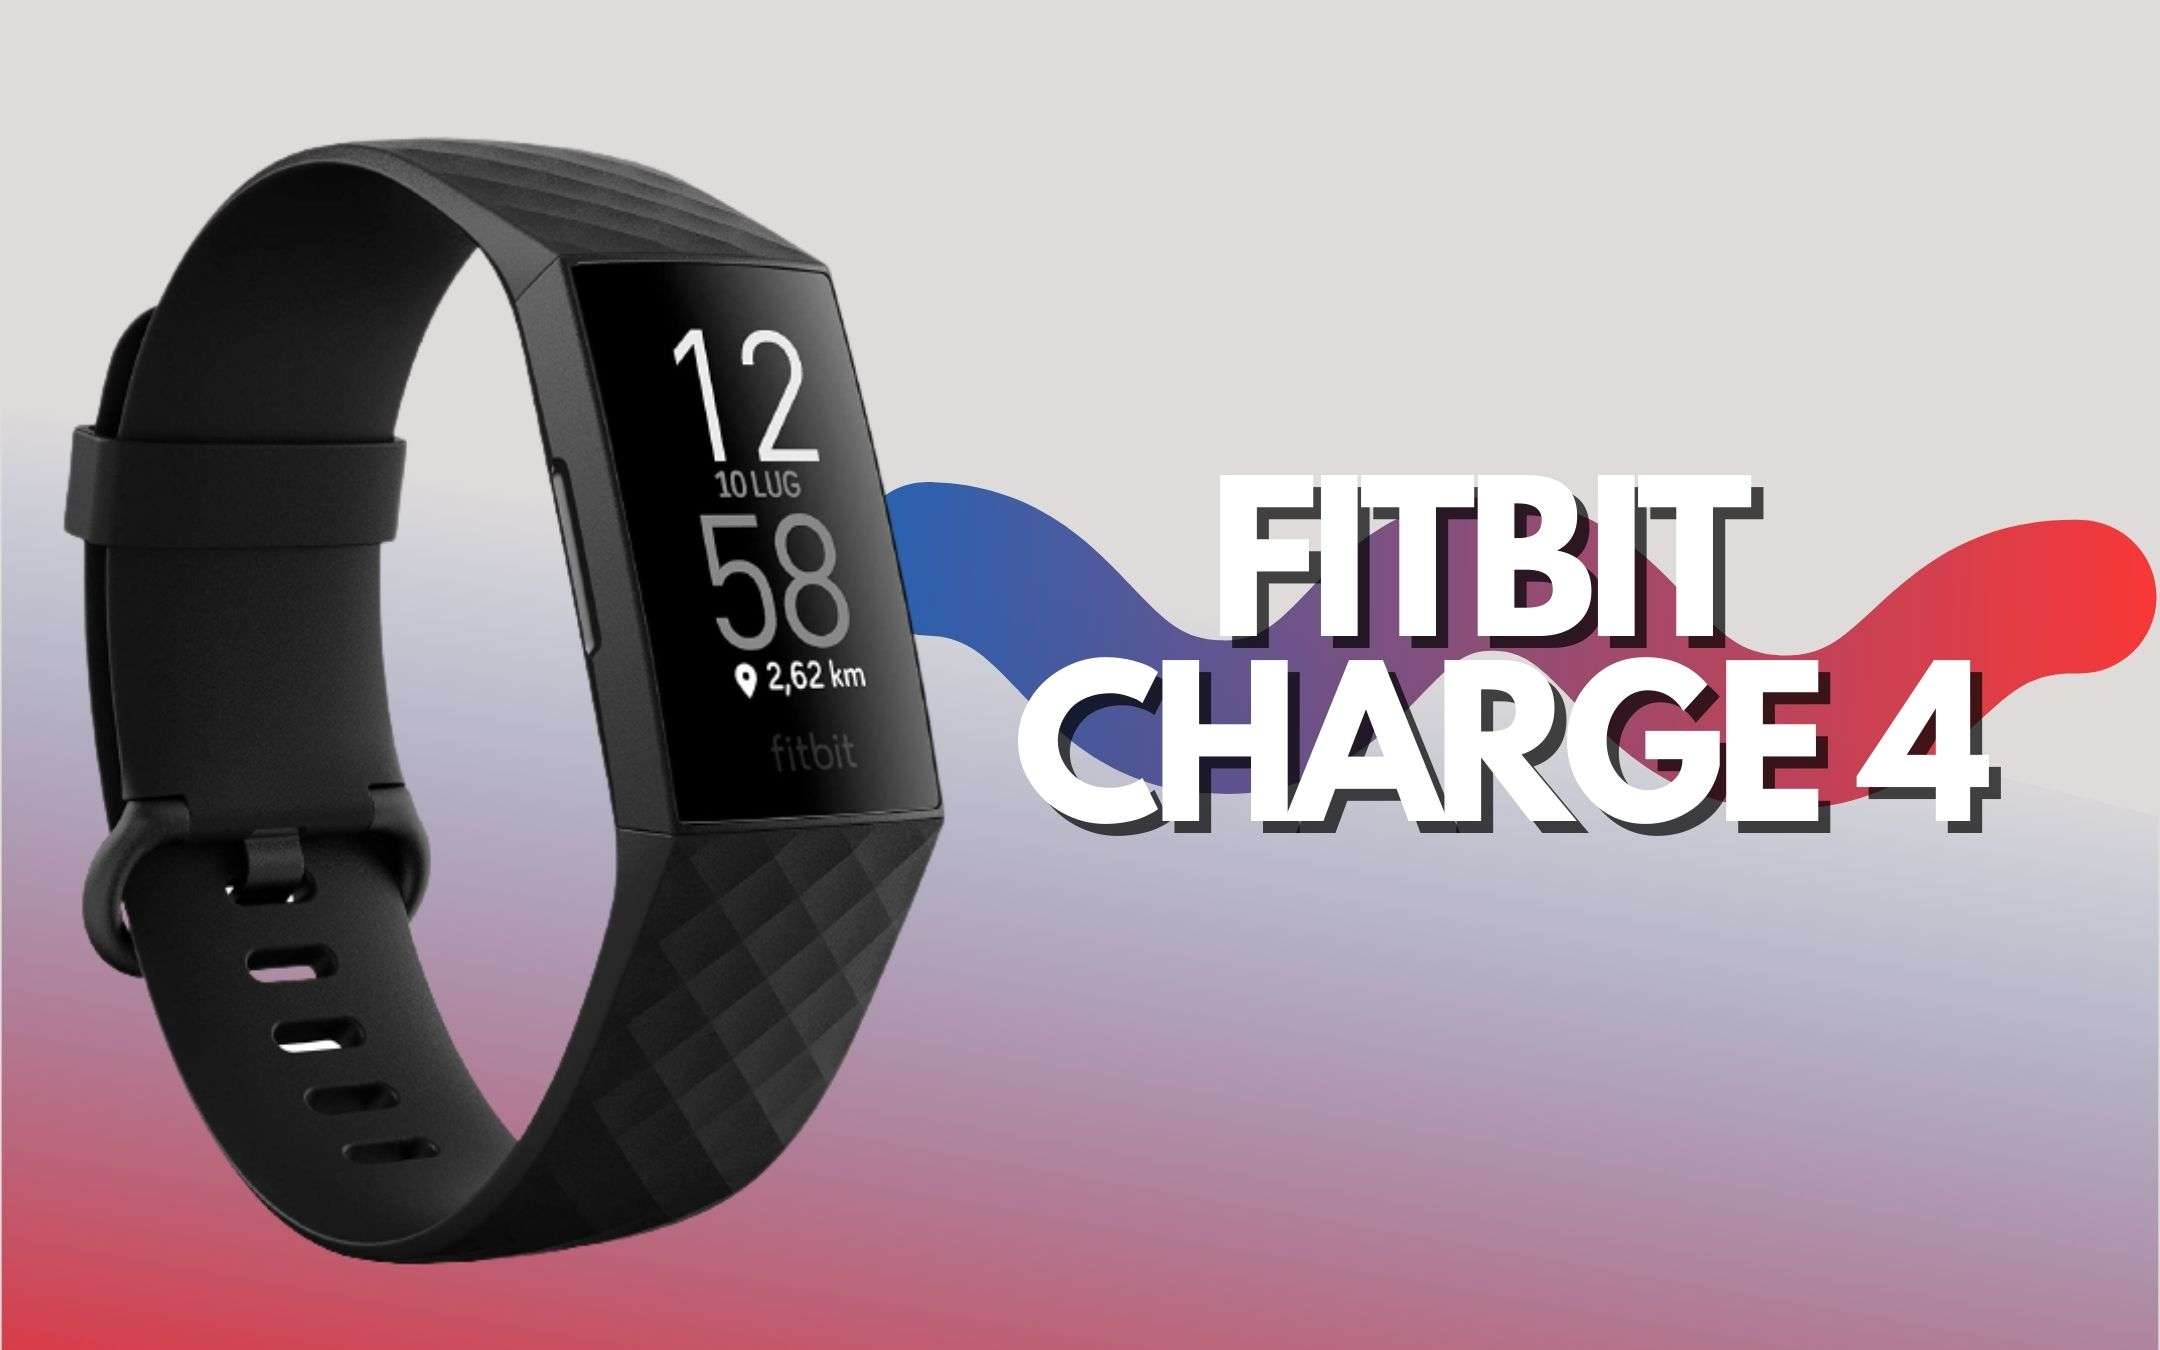 Fitbit Charge 4 è il tracker che hai sempre voluto (-20€)